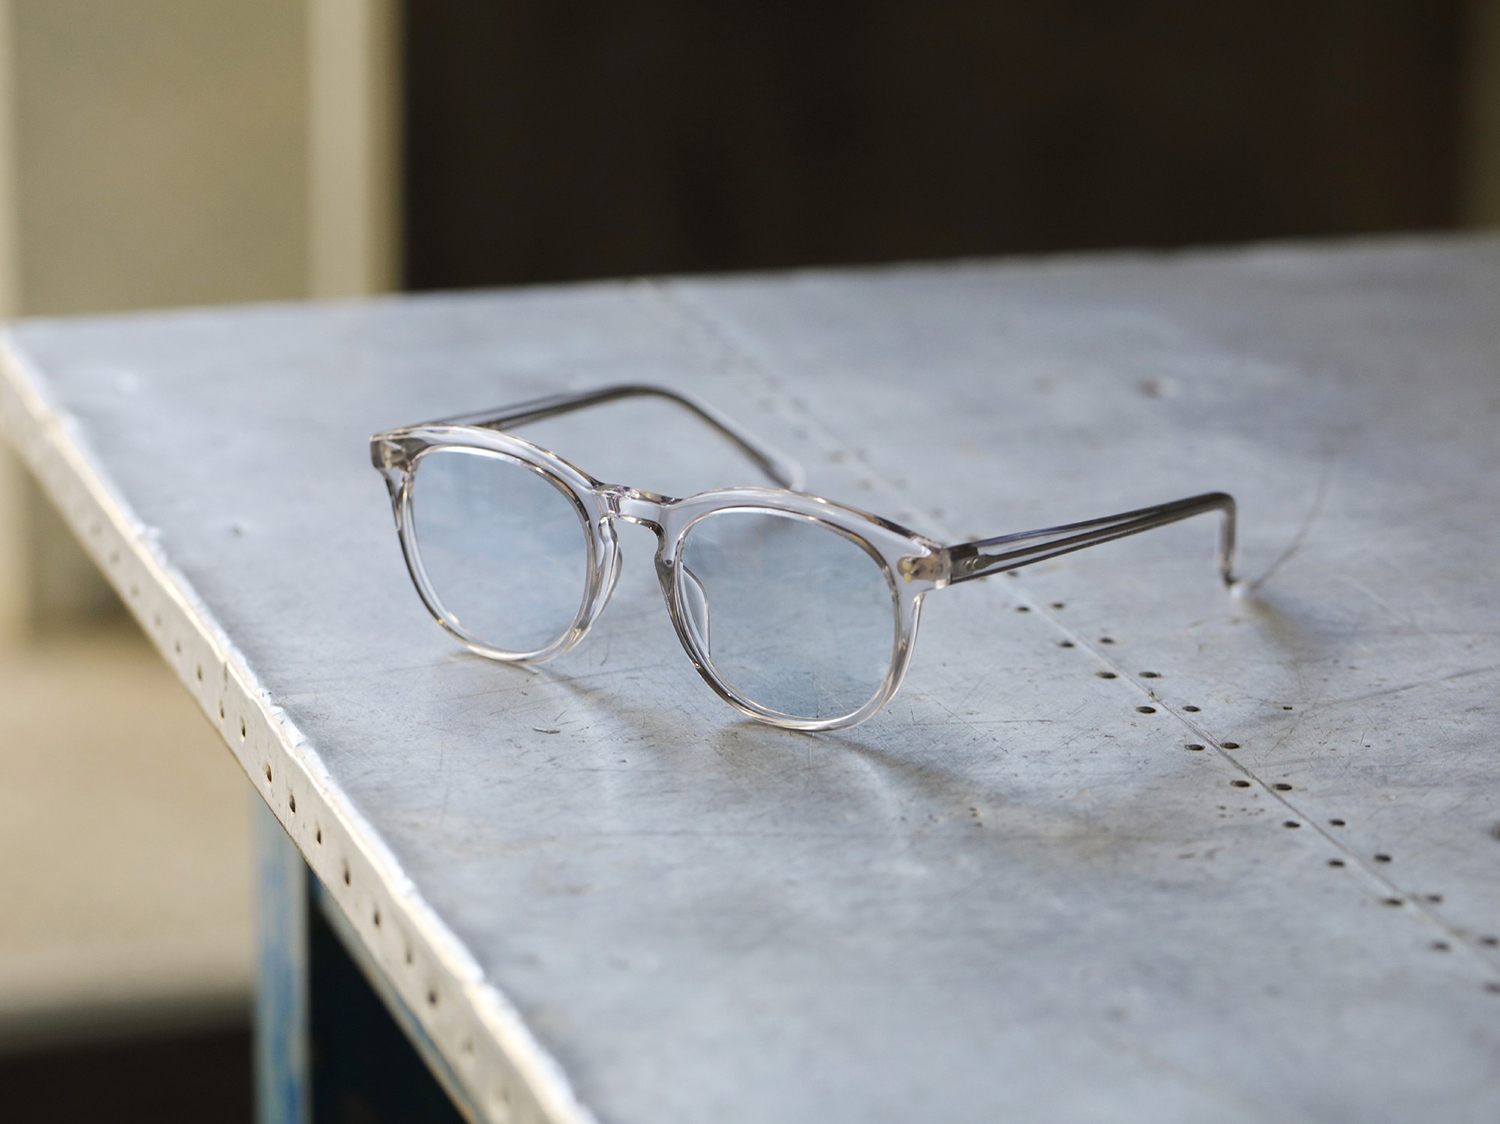 ジョン・レノンも愛した白山眼鏡店の名作『MAYFAIR』が復刻